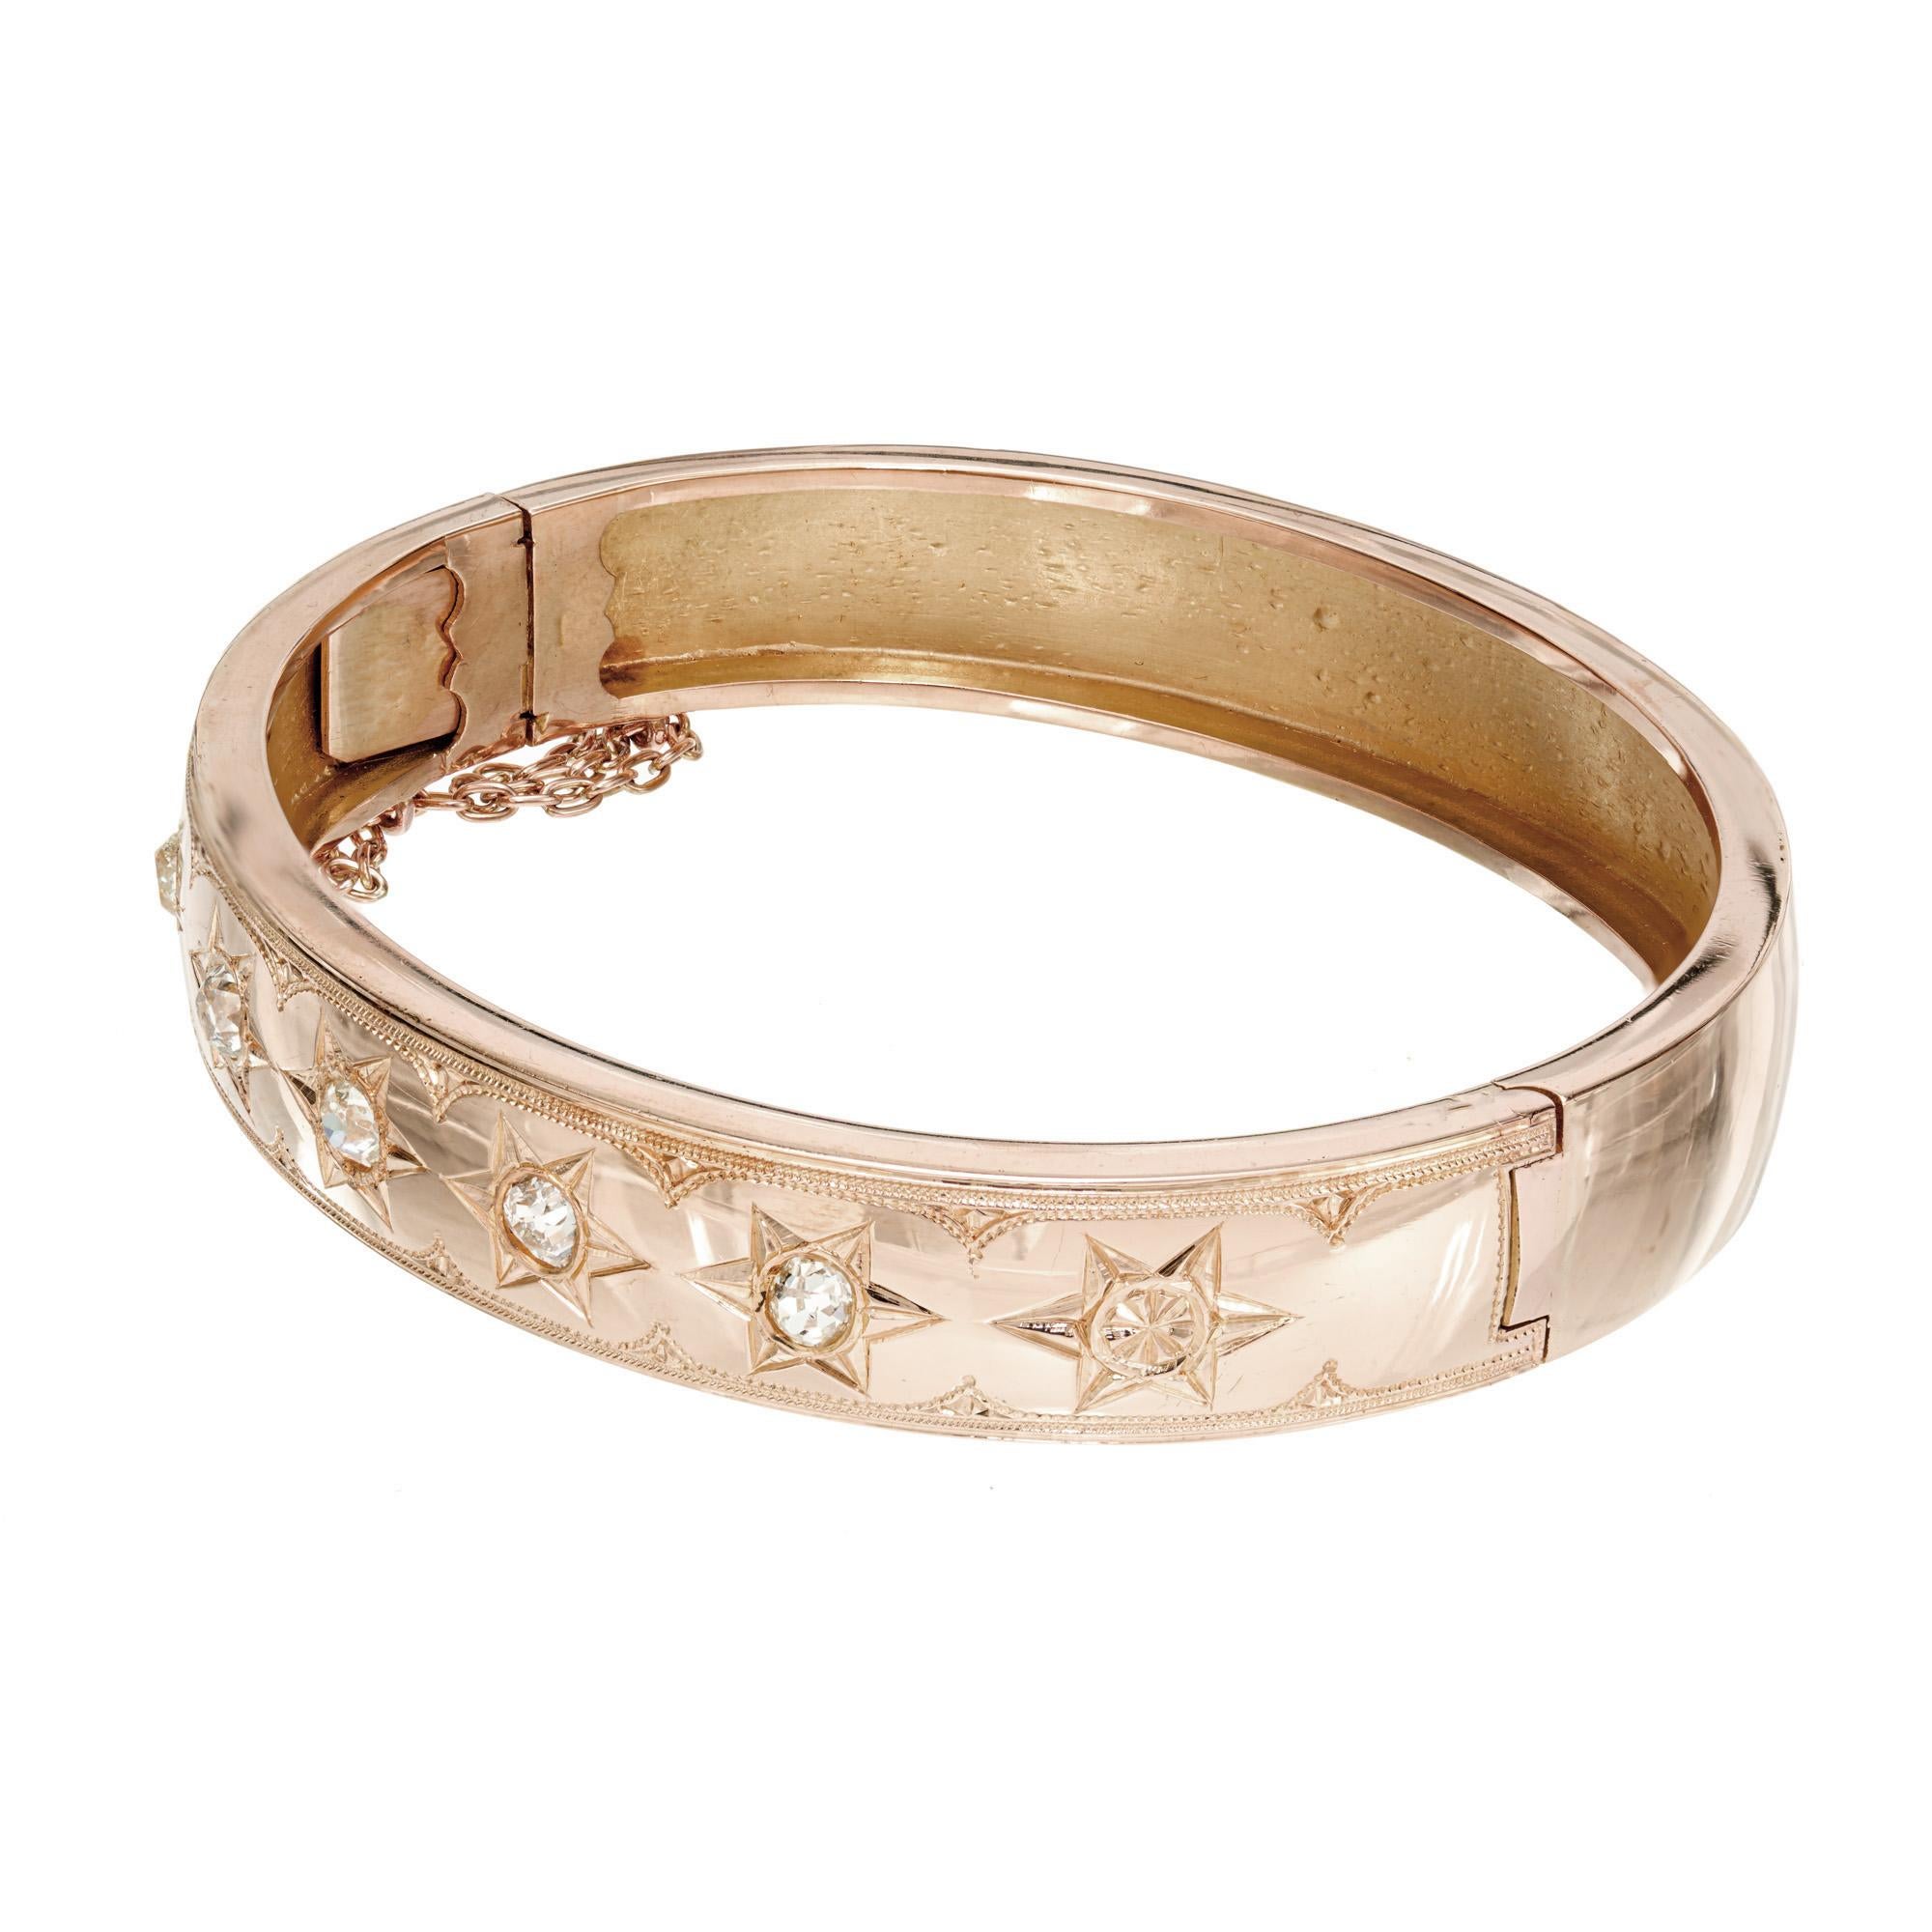 Bracelet bangle en or rose 14k avec diamants de 11 mm de large, fabriqué à la main, datant de l'époque victorienne, vers 1850. 5 diamants taille ancienne, sertis en étoile à 6 branches. Or rose doux-moyen. Attrapez avec une chaîne de sécurité. 

5